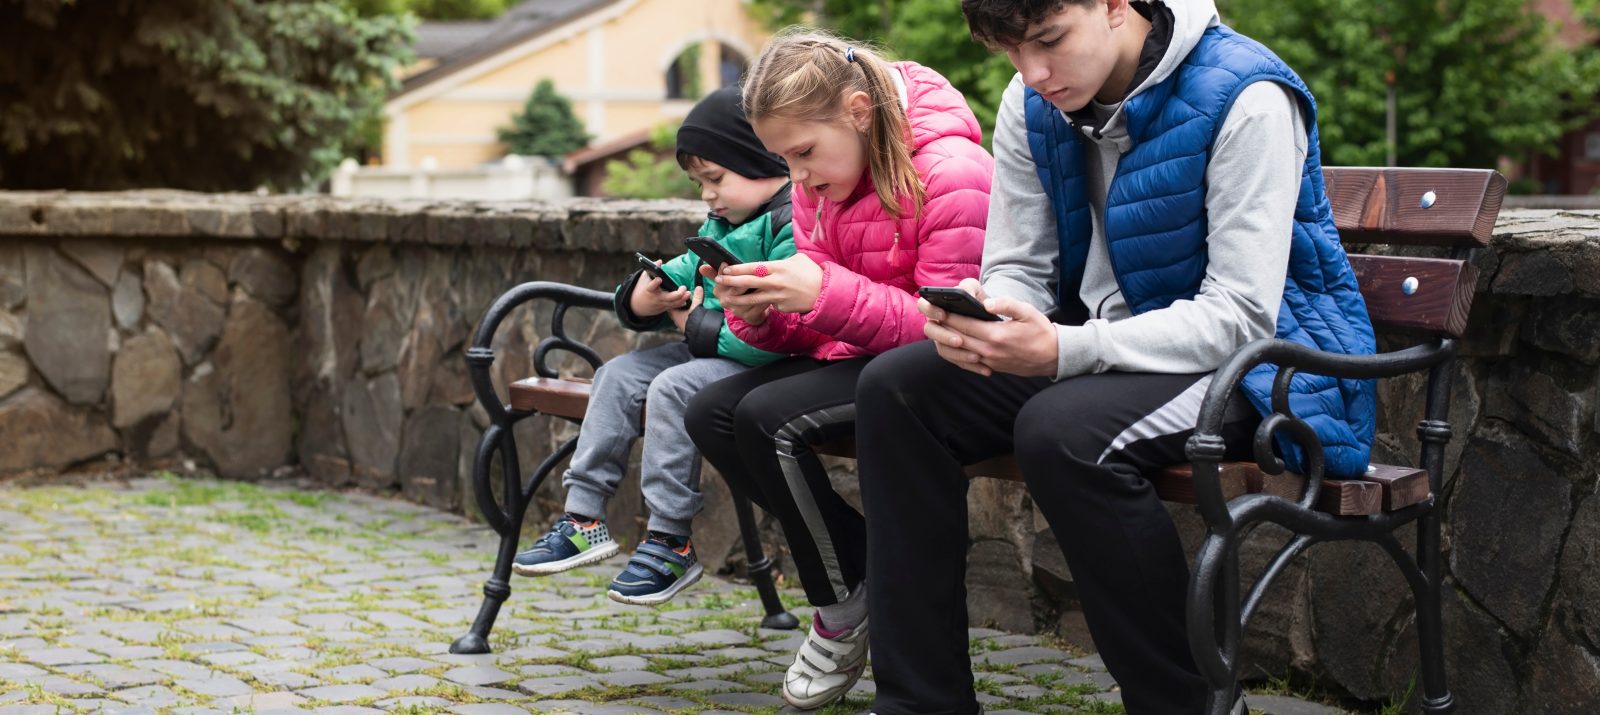 Kinder und Jugendliche mit Smartphone auf Parkbank © Marian Fil/Shutterstock.com